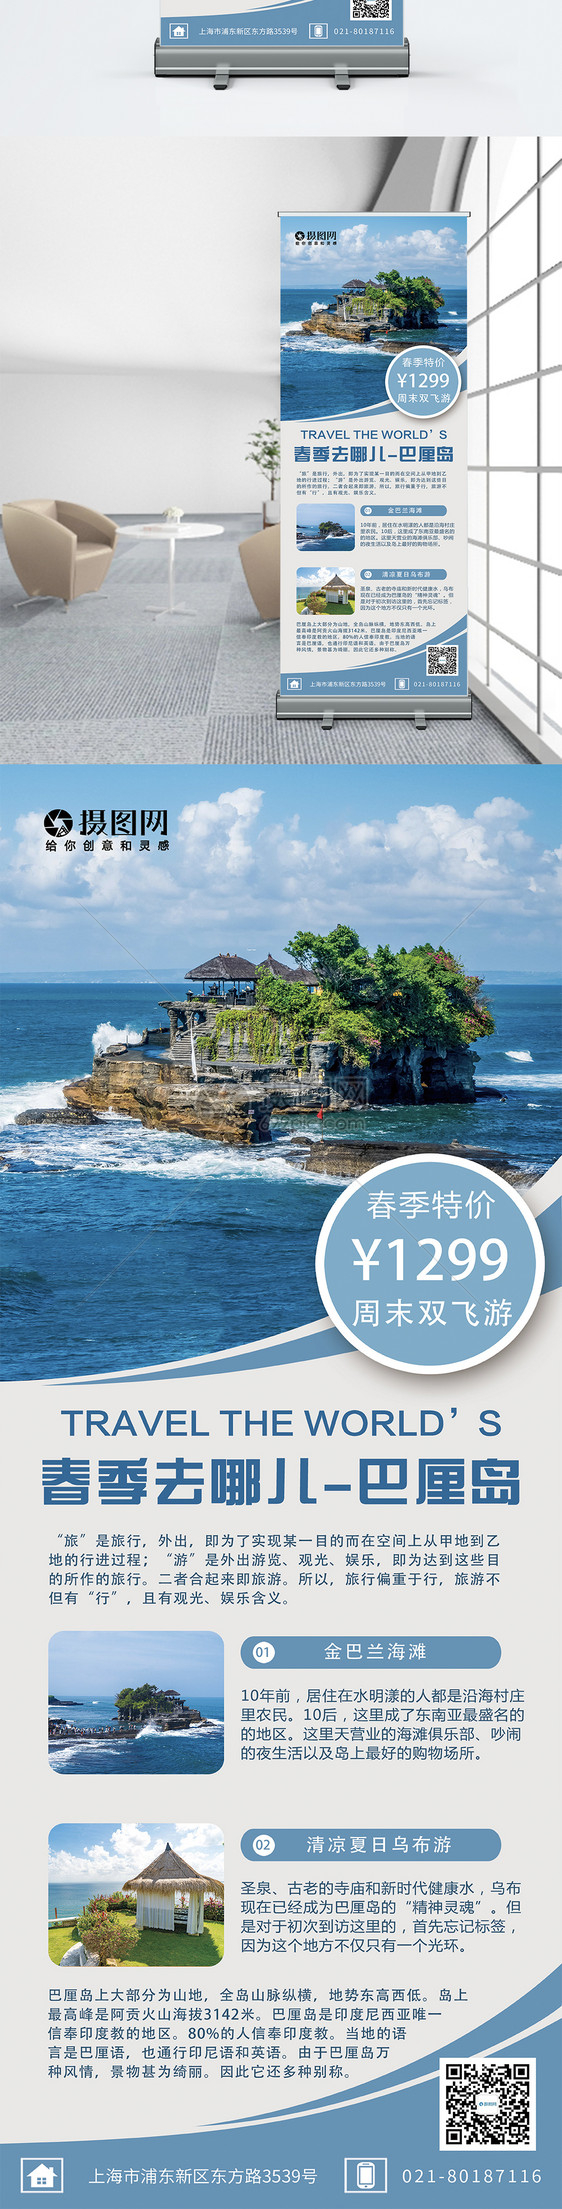 蓝色简约大气春季旅游巴厘岛旅行活动促销宣传X展架易拉宝图片